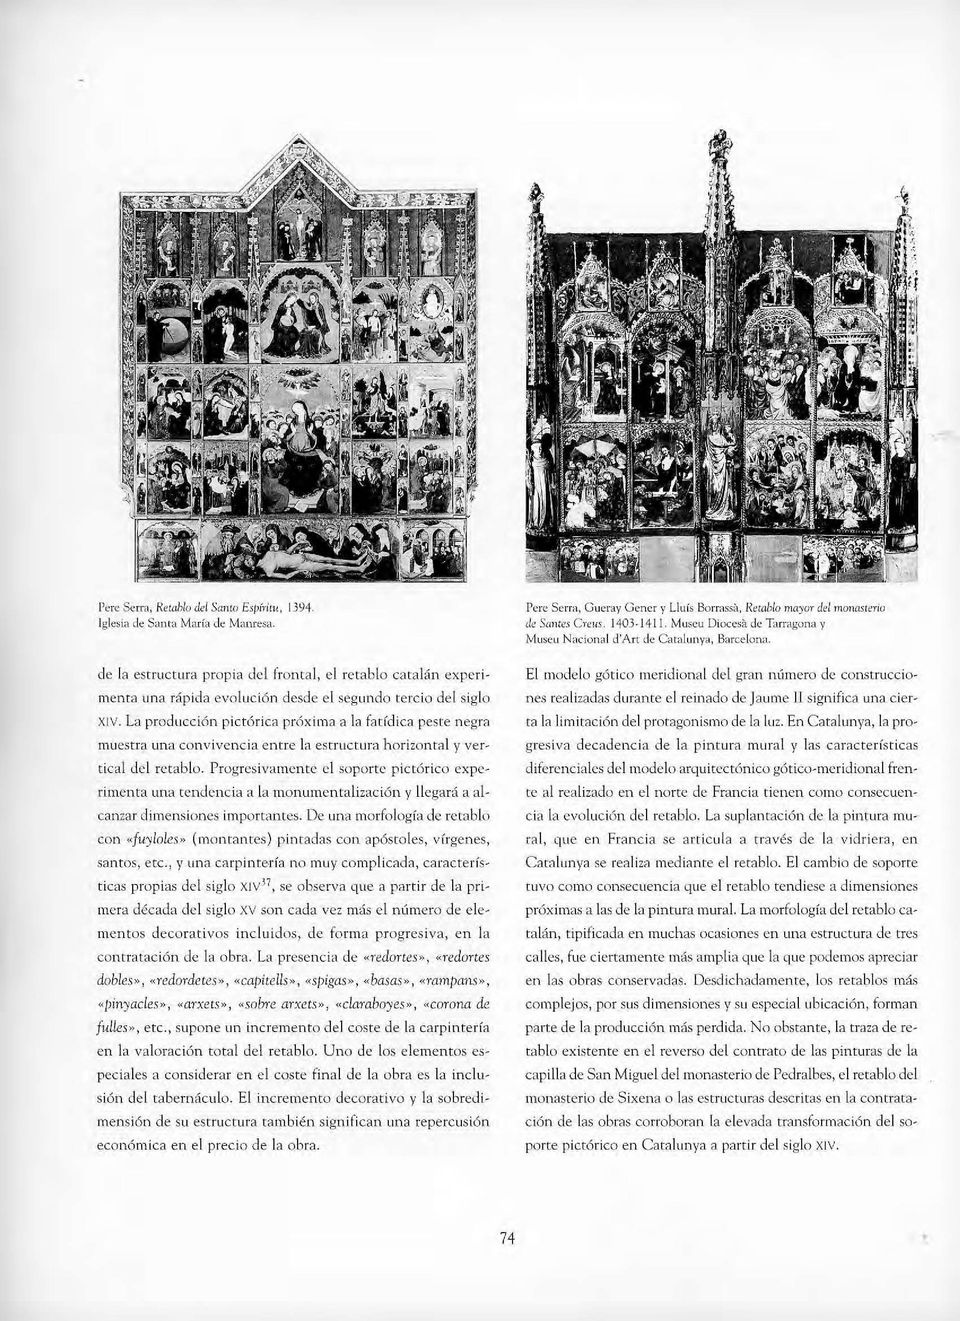 La producción pictórica próxima a la fatídica peste negra muestra una convivencia entre la estructura horizontal y vertical del retablo.